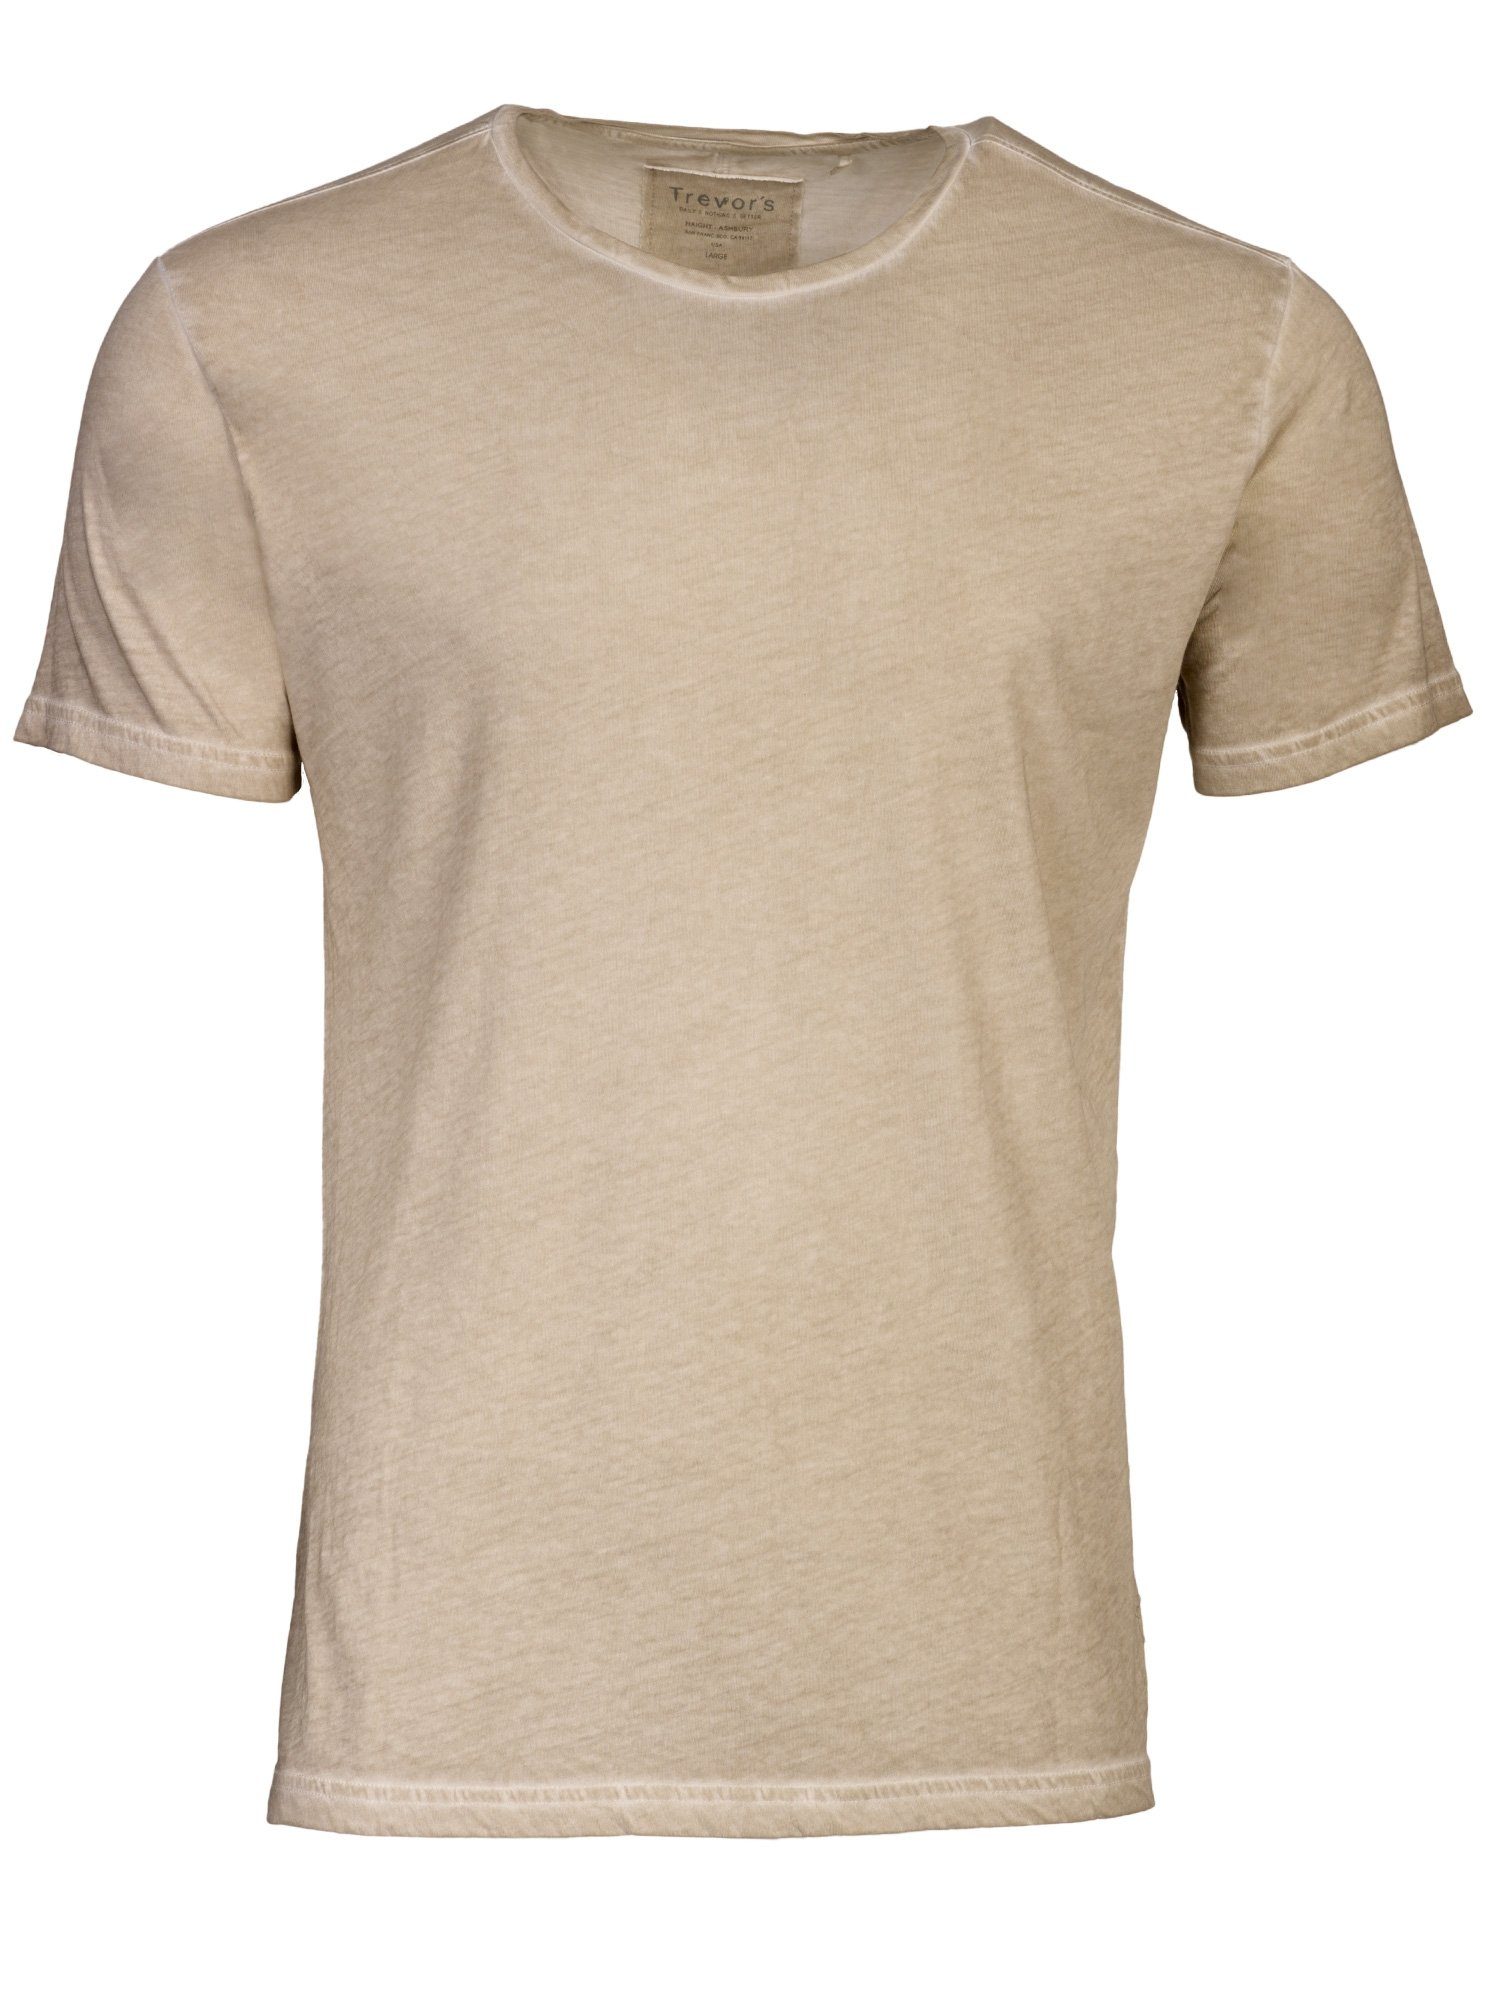 KIMI: 100% T-Shirt Herren aus Sand DAILY´S Dunkler T-Shirt softes Biobaumwolle